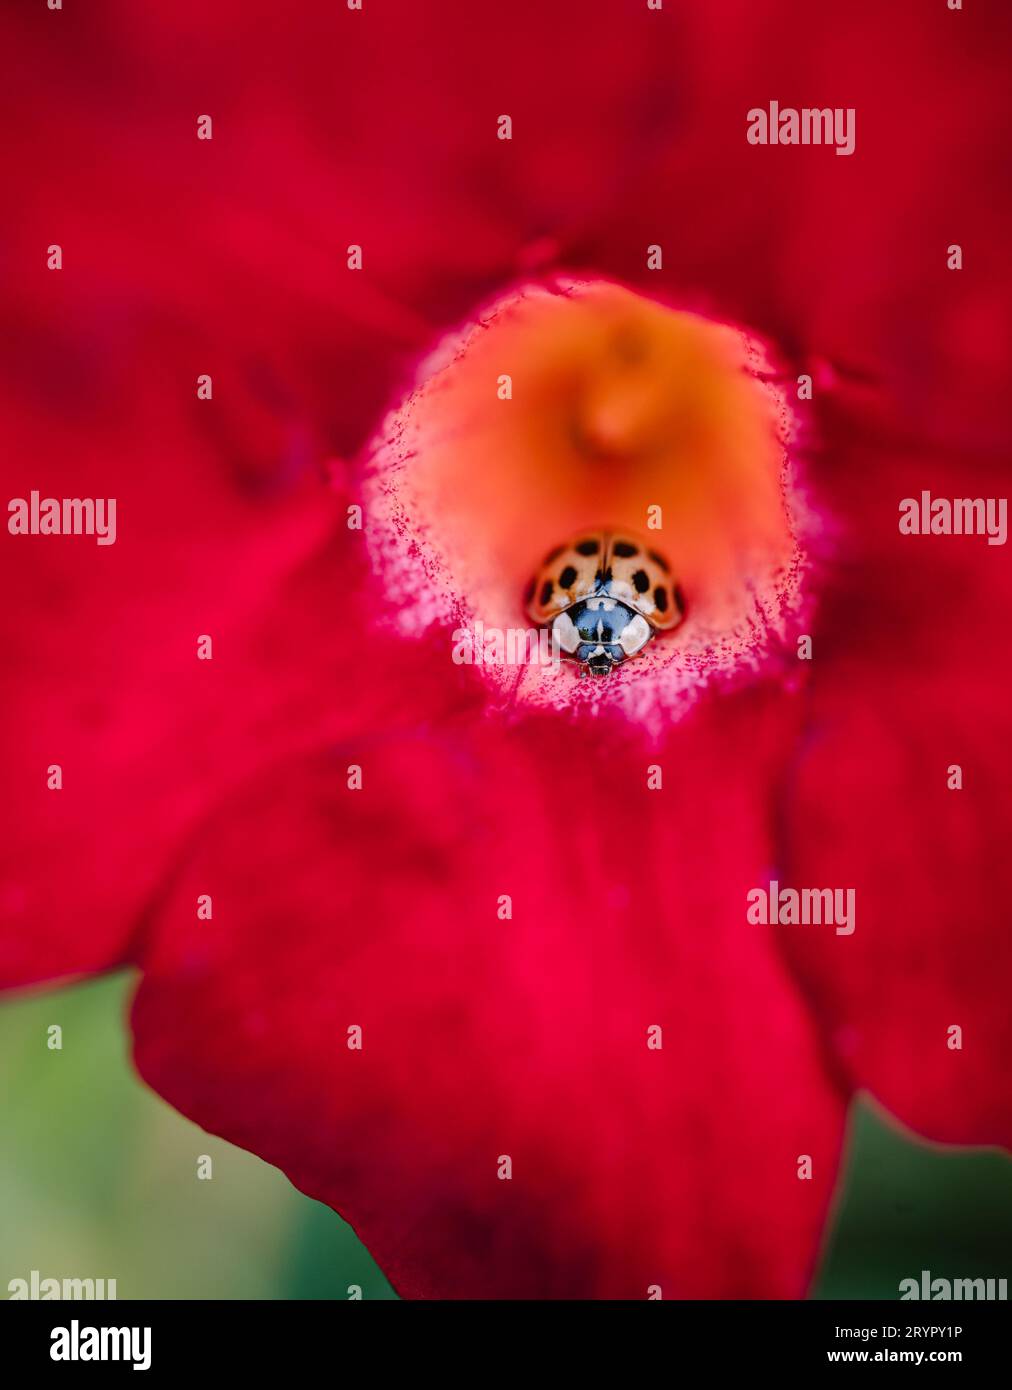 Gros plan d'une coccinelle asiatique (arlequin) à l'intérieur d'une fleur rouge. Banque D'Images